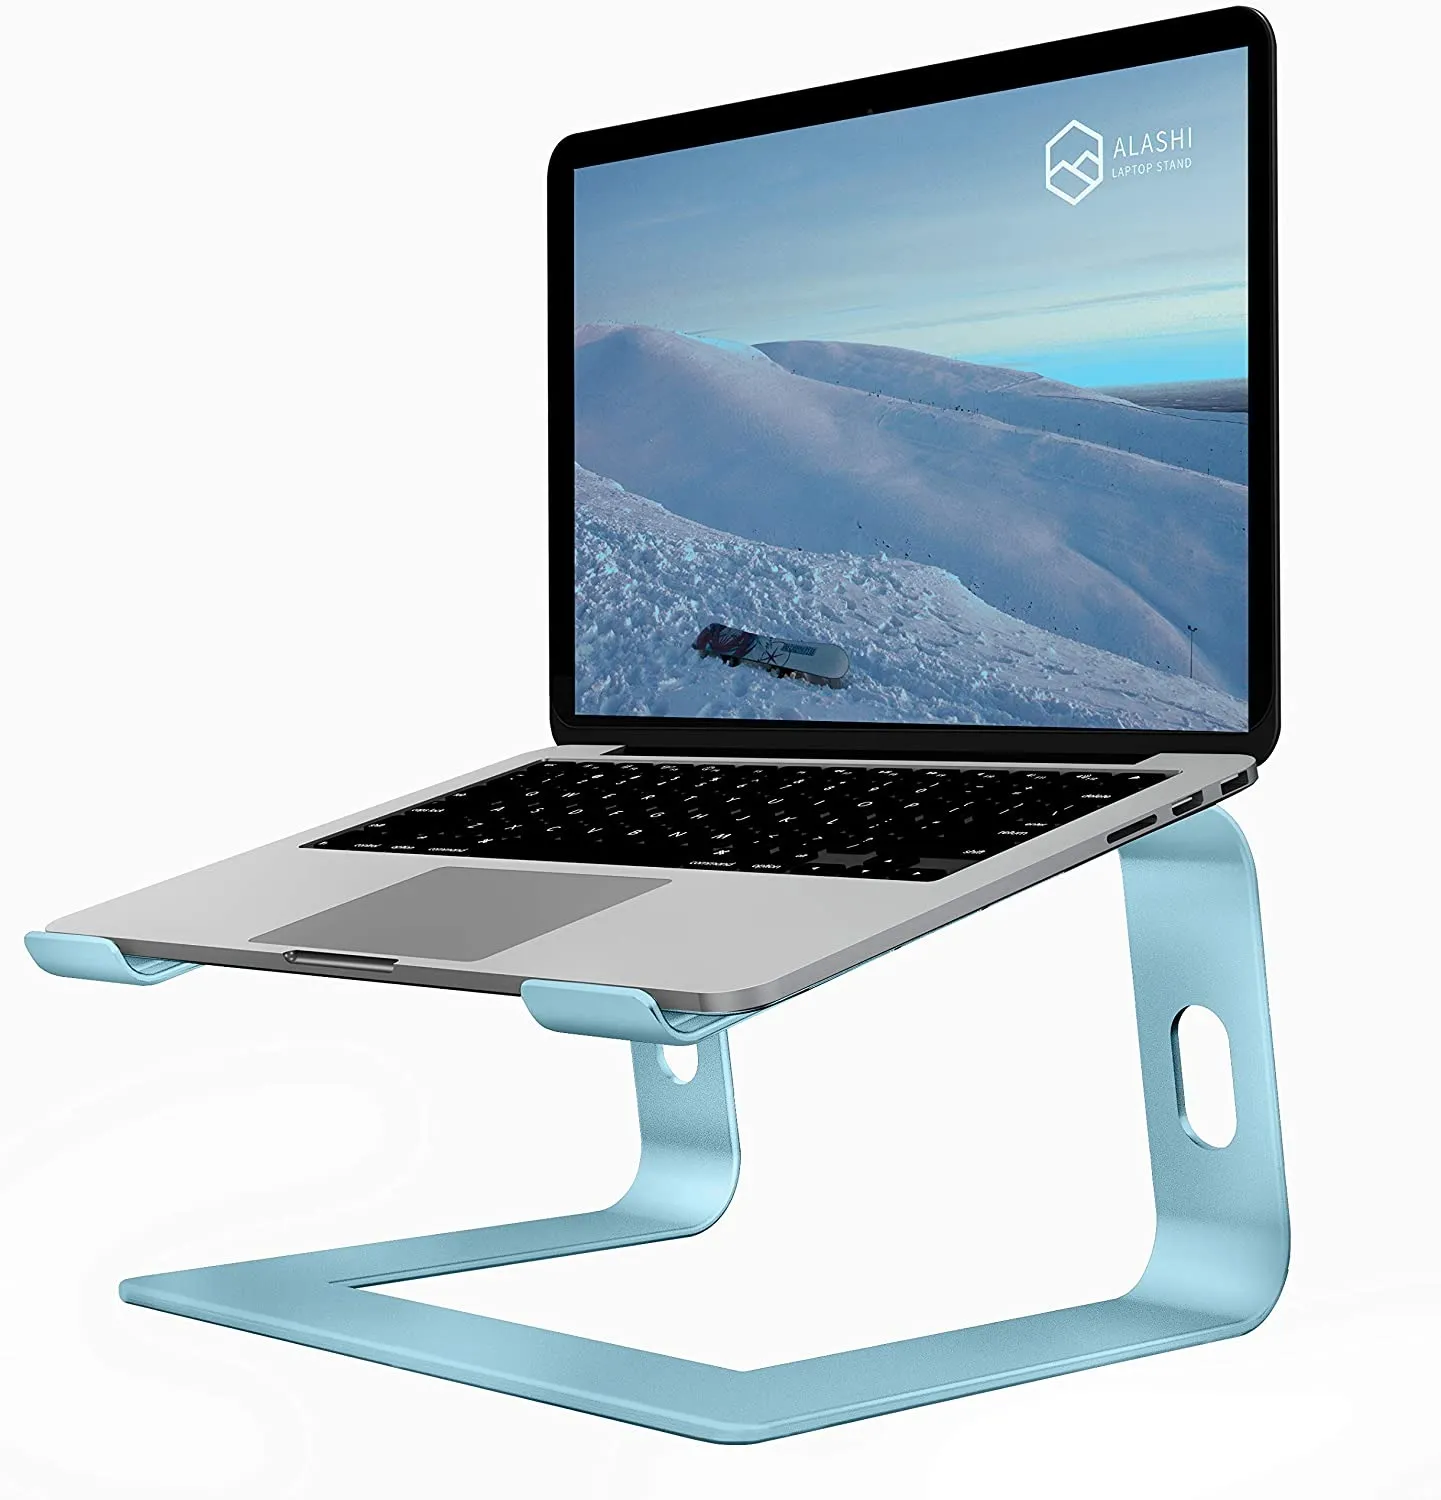 Stojak na laptopa na biurko, aluminiowy rander komputerowy, ergonomiczny uchwyt na notebooka, odpinane metalowe laptopy winda, uchwyt do montażu komputera 10 do 15,6 cali, aqua blue